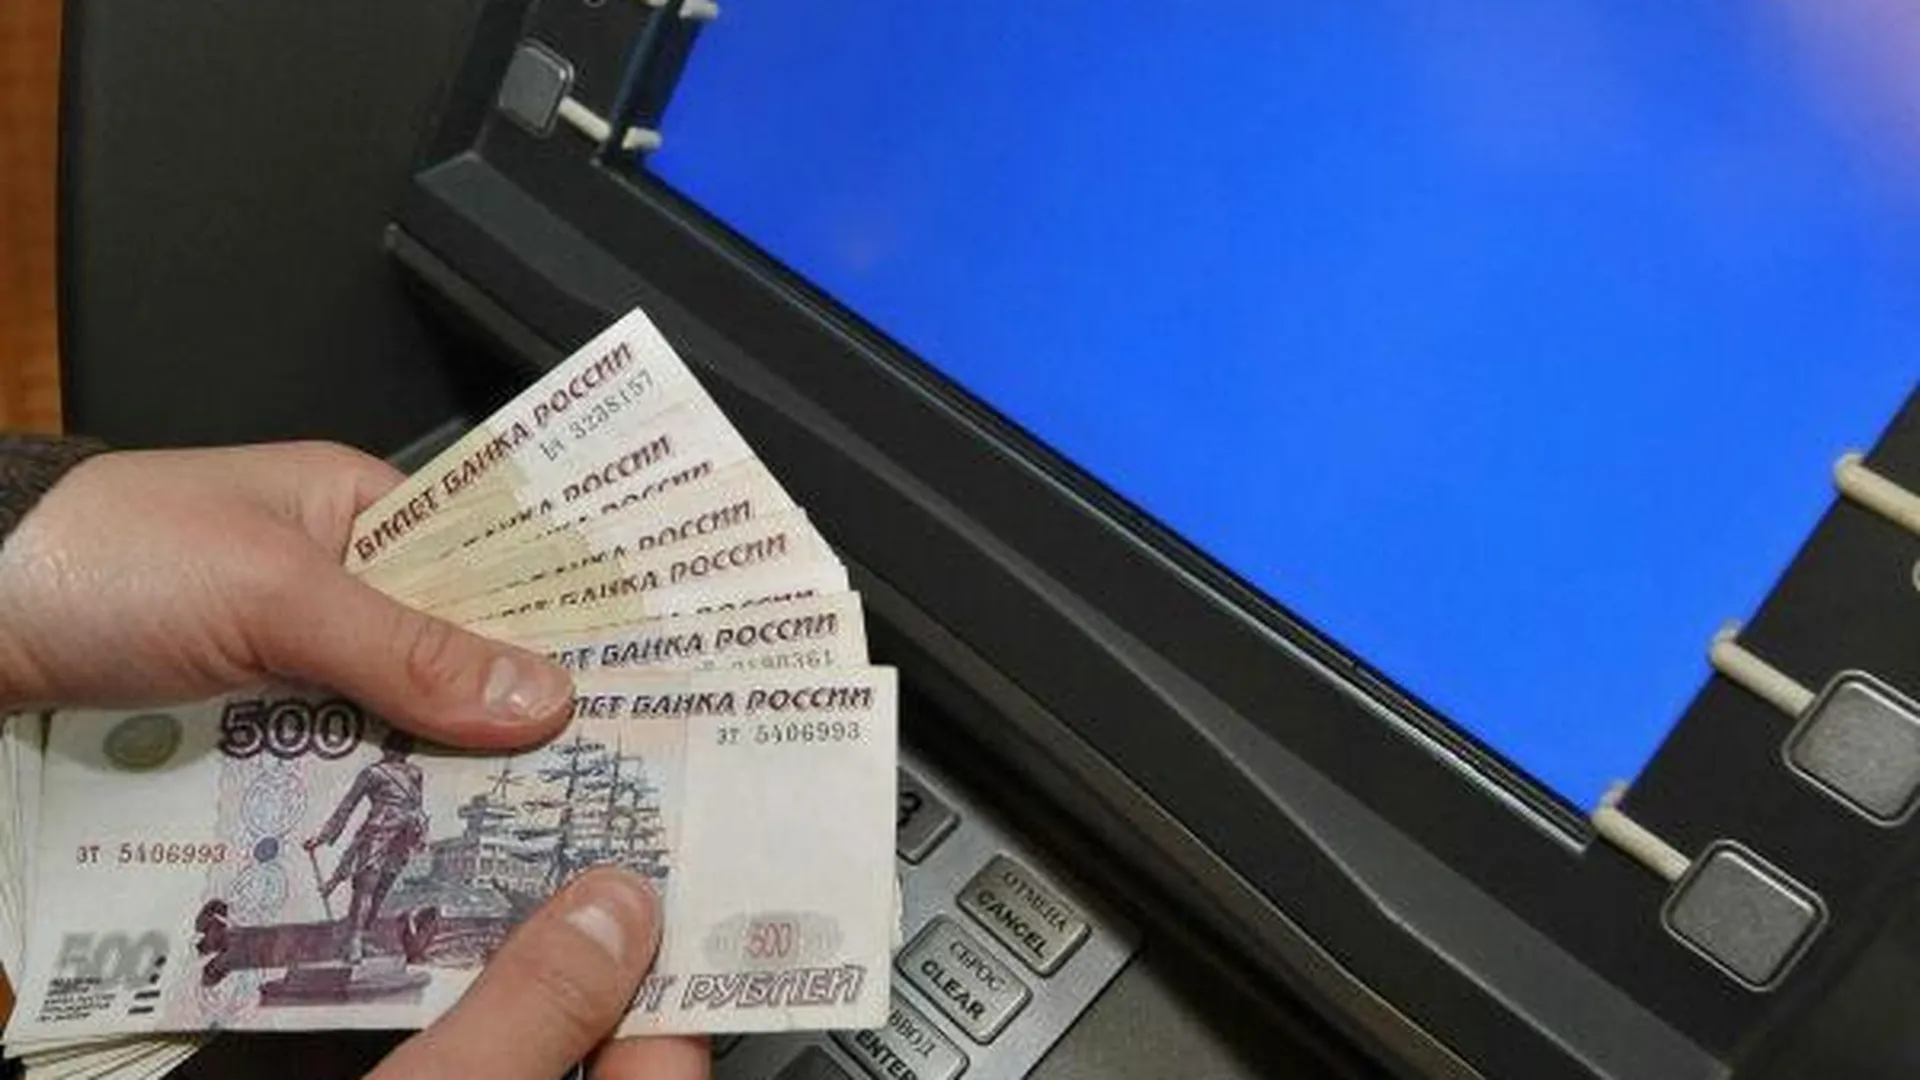 Около 4 млн руб украли из банкомата в поликлинике Одинцова